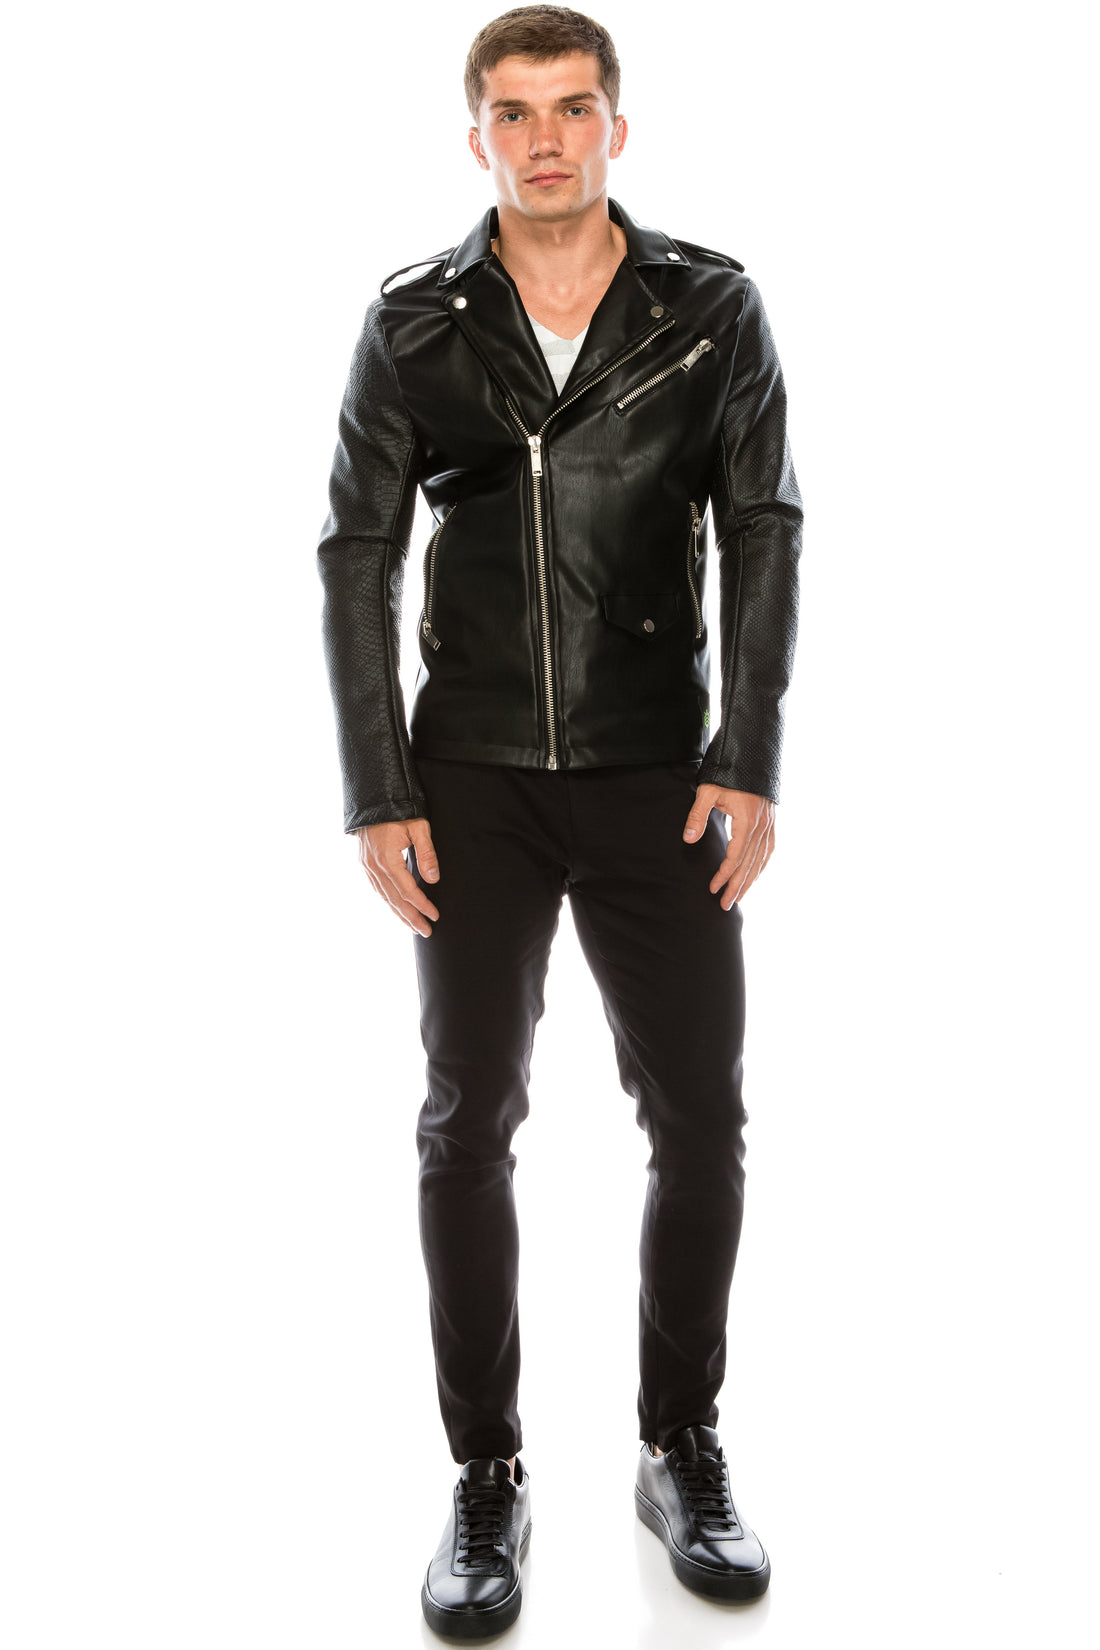 Faux leather designer men's jacket in black.